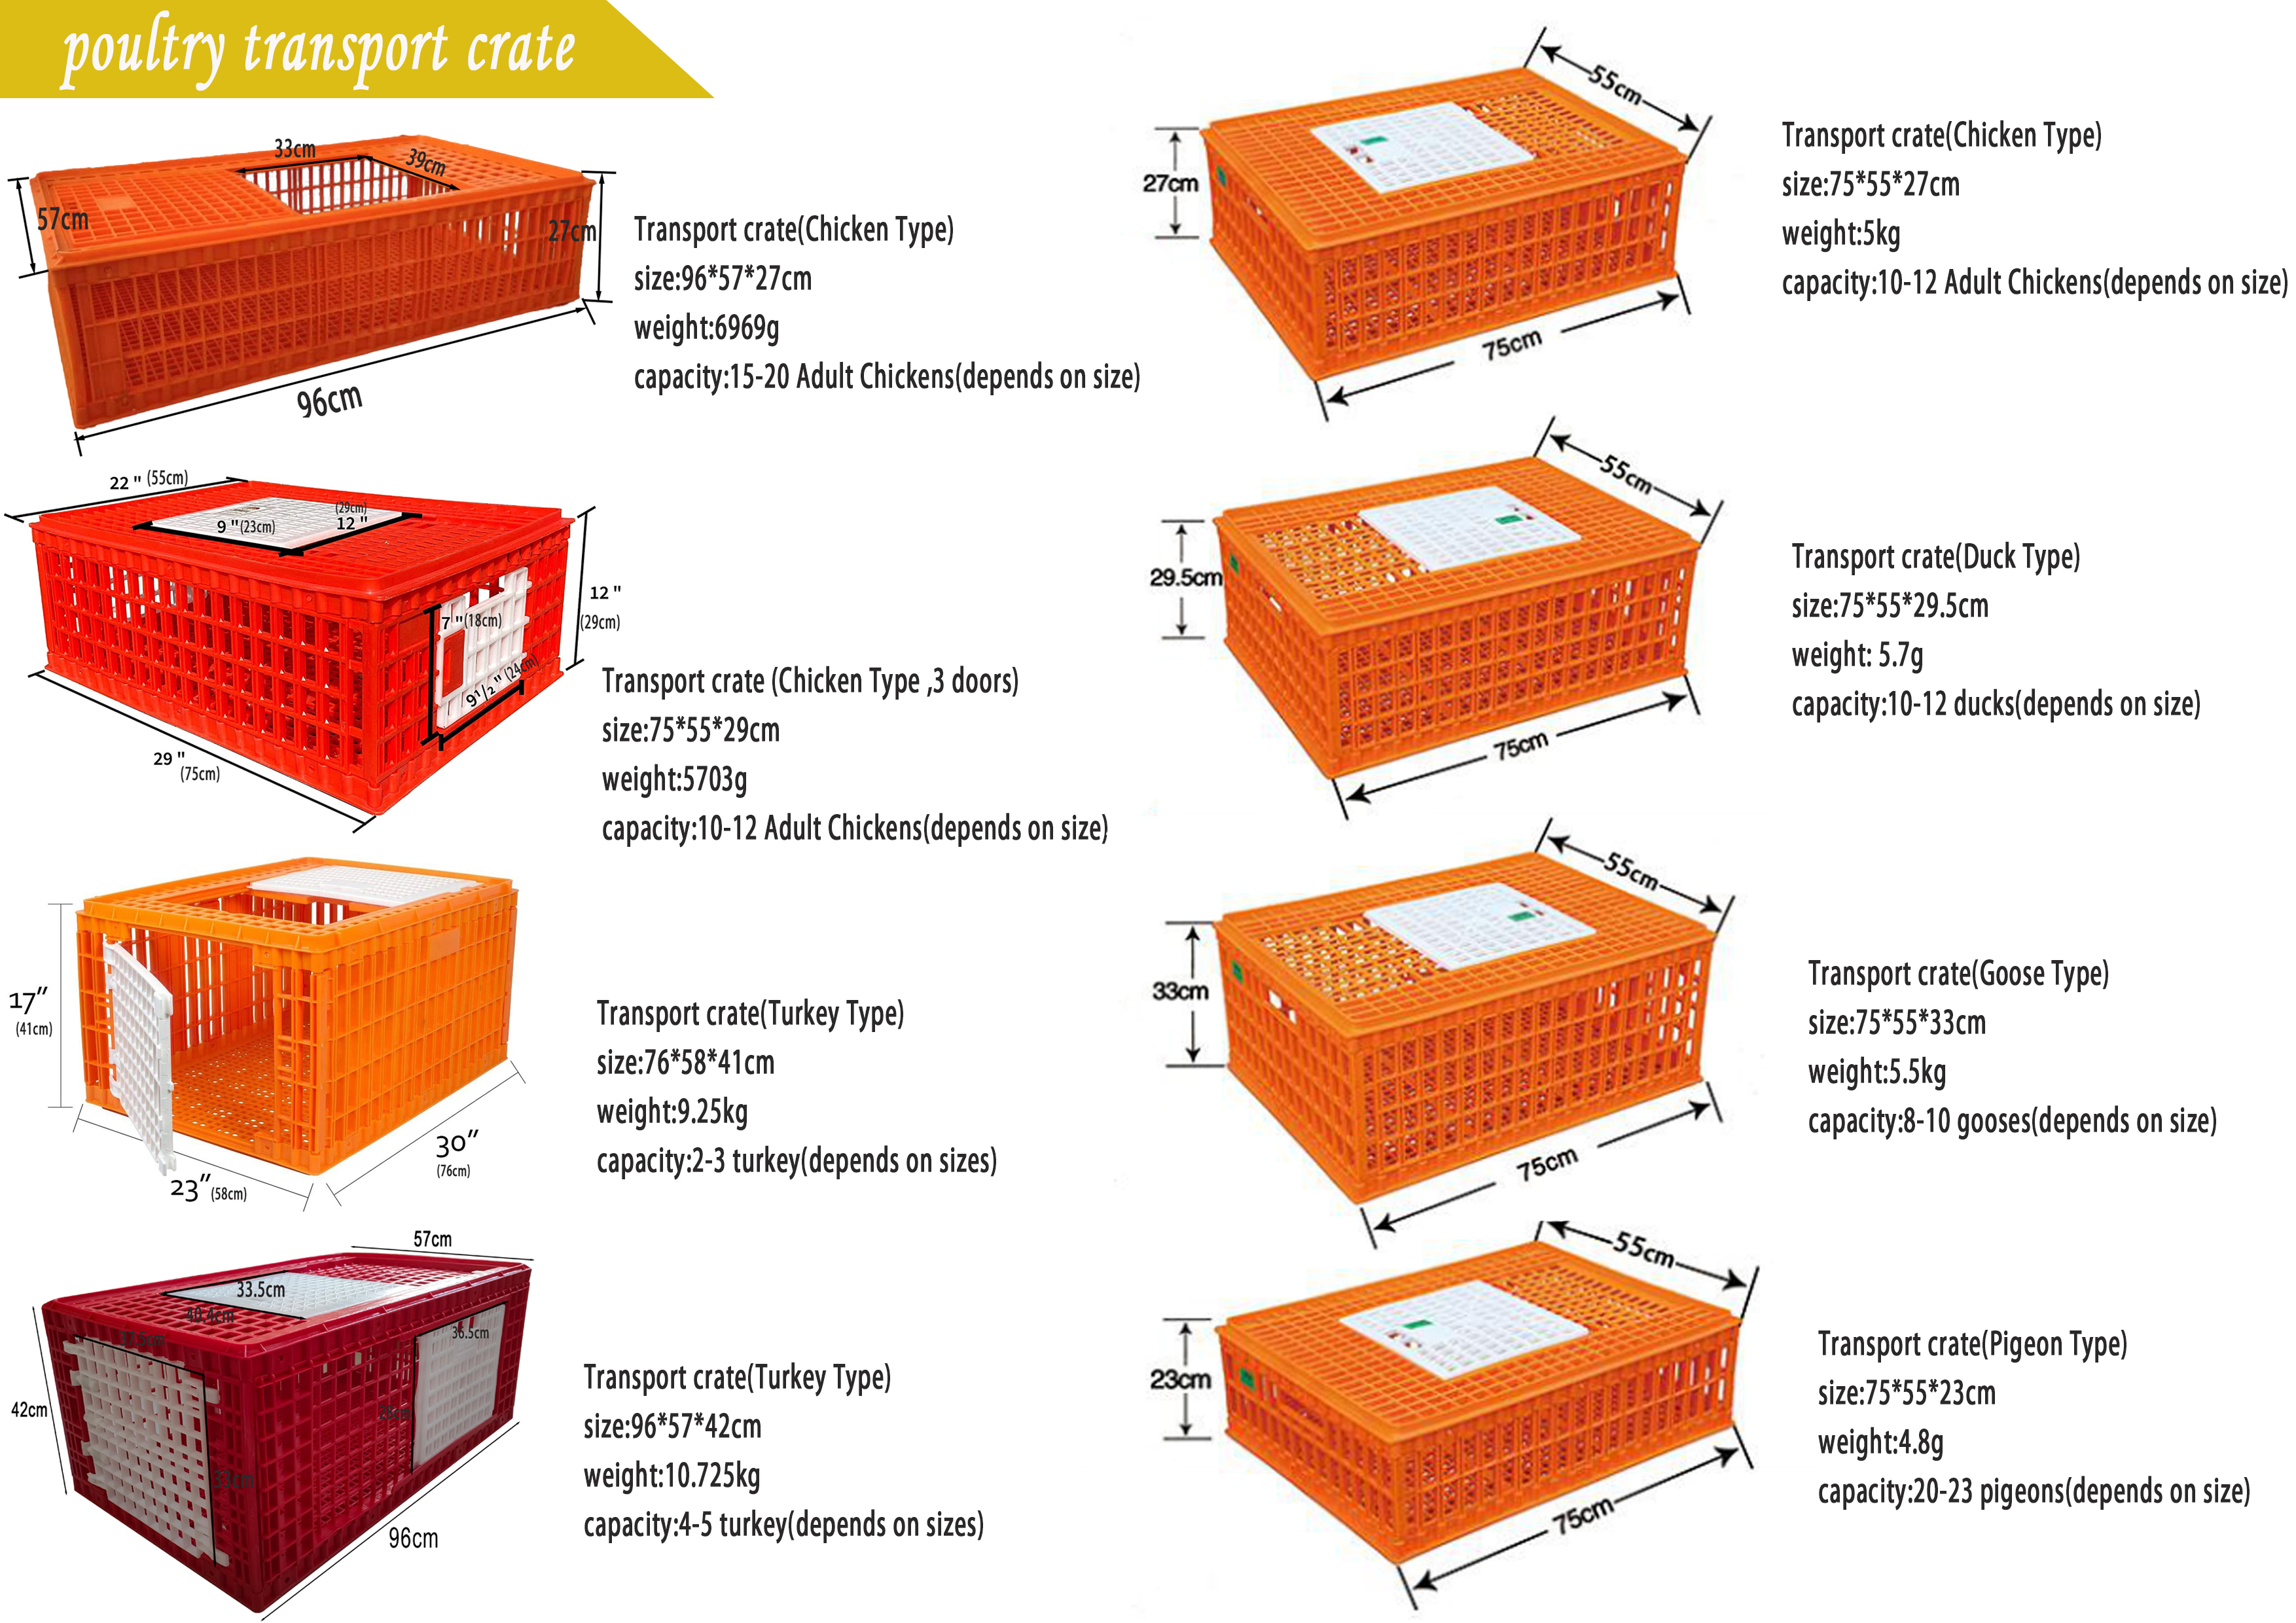 transport crates